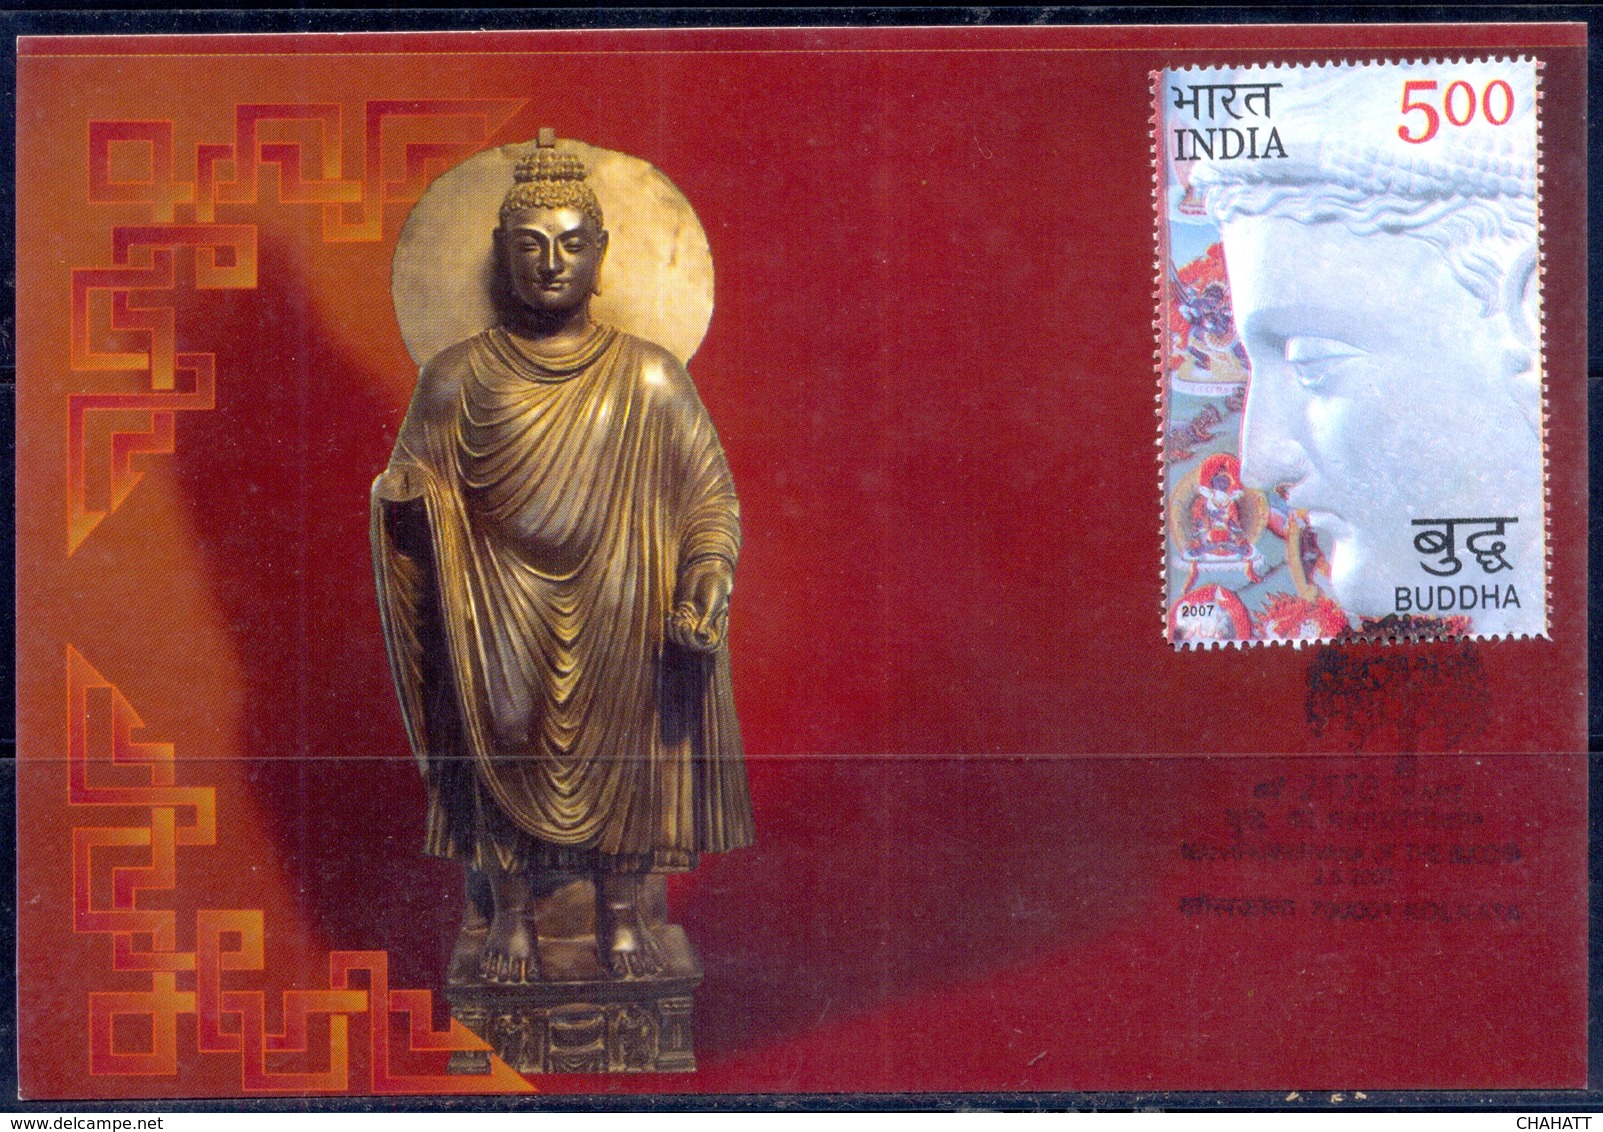 RELIGIONS-BUDDHISM- 2550 YEARS OF MAHAPARINIRVANA -MAXIMUM CARD #5- INDIA-2007- MC-64 - Buddhism